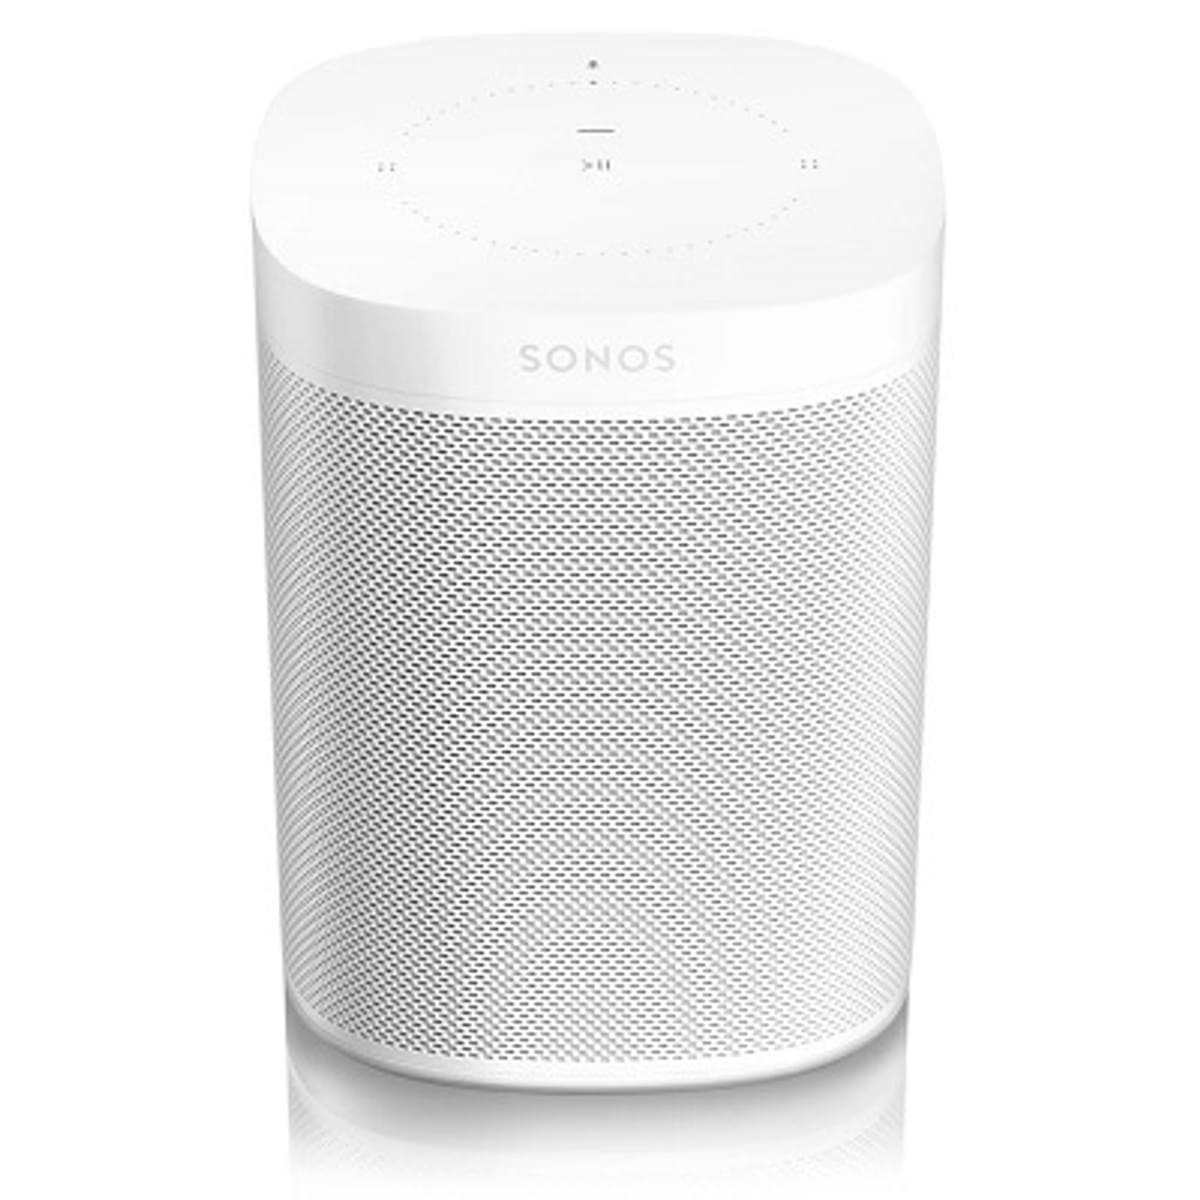 Speakermaker Sonos krijgt beursnotering met SONO image